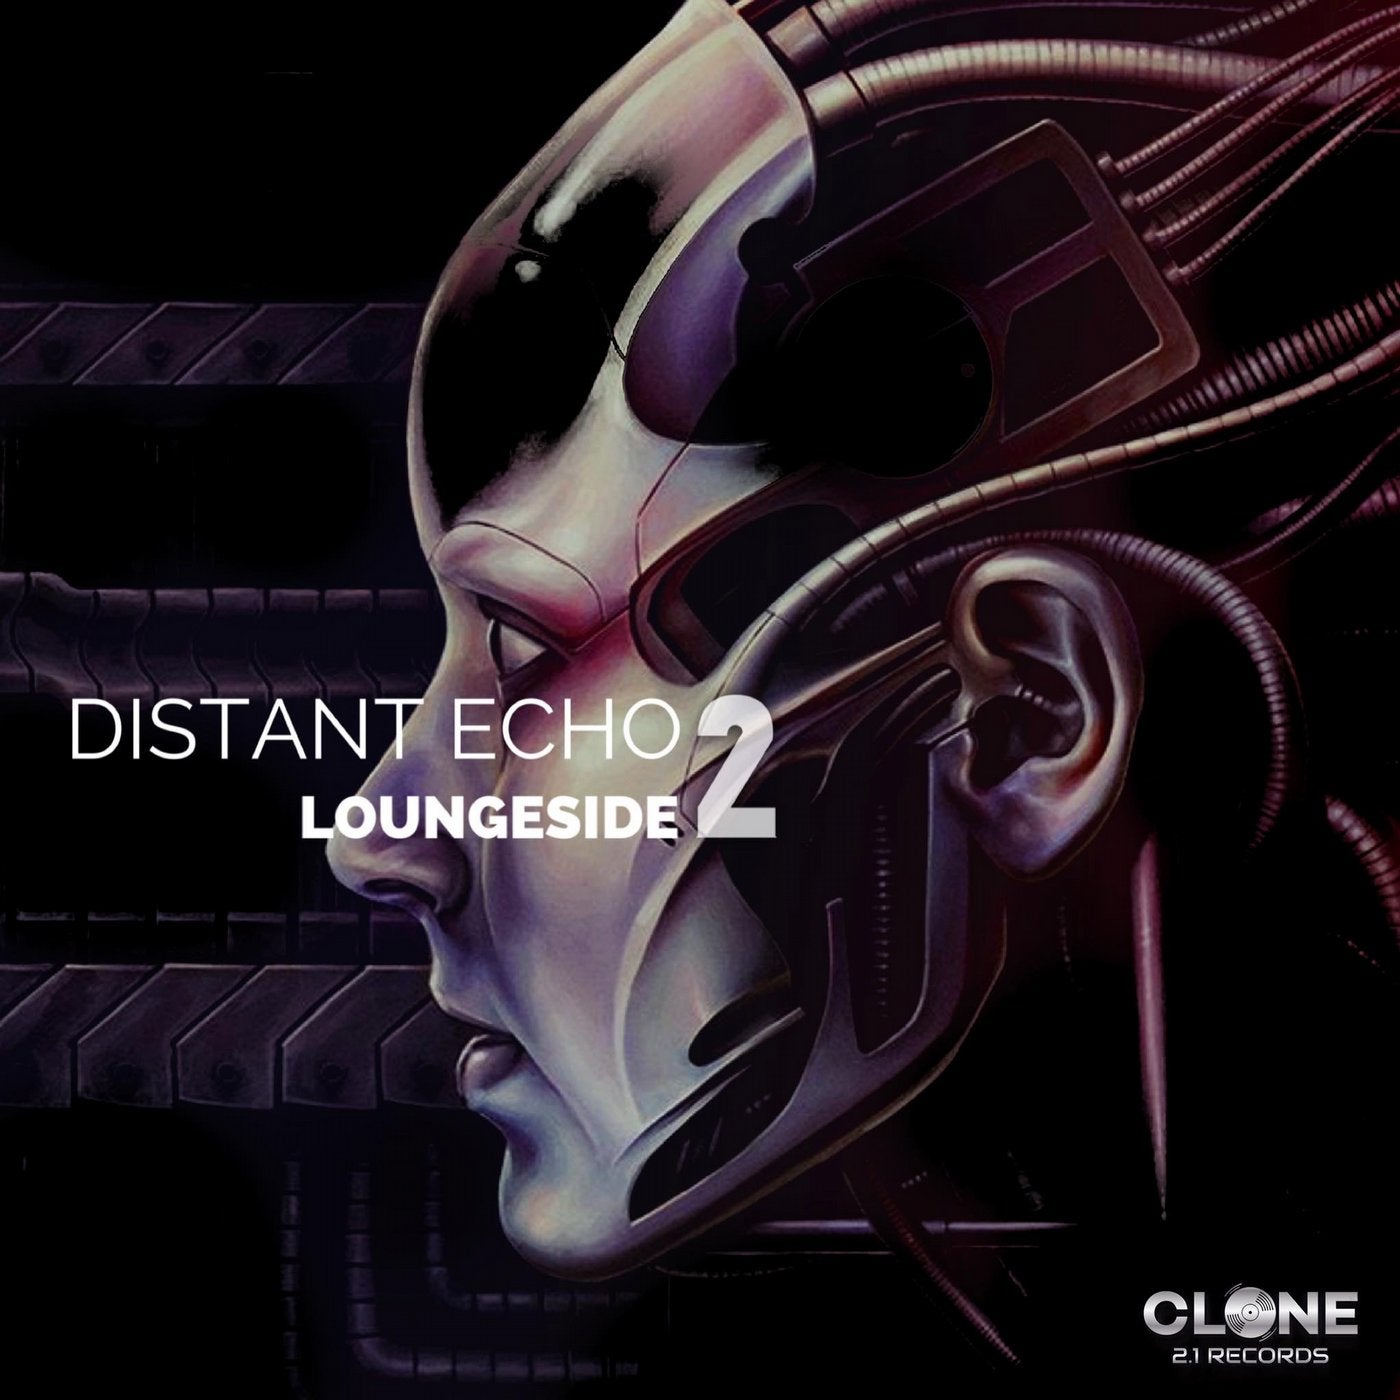 Distant Echo 2